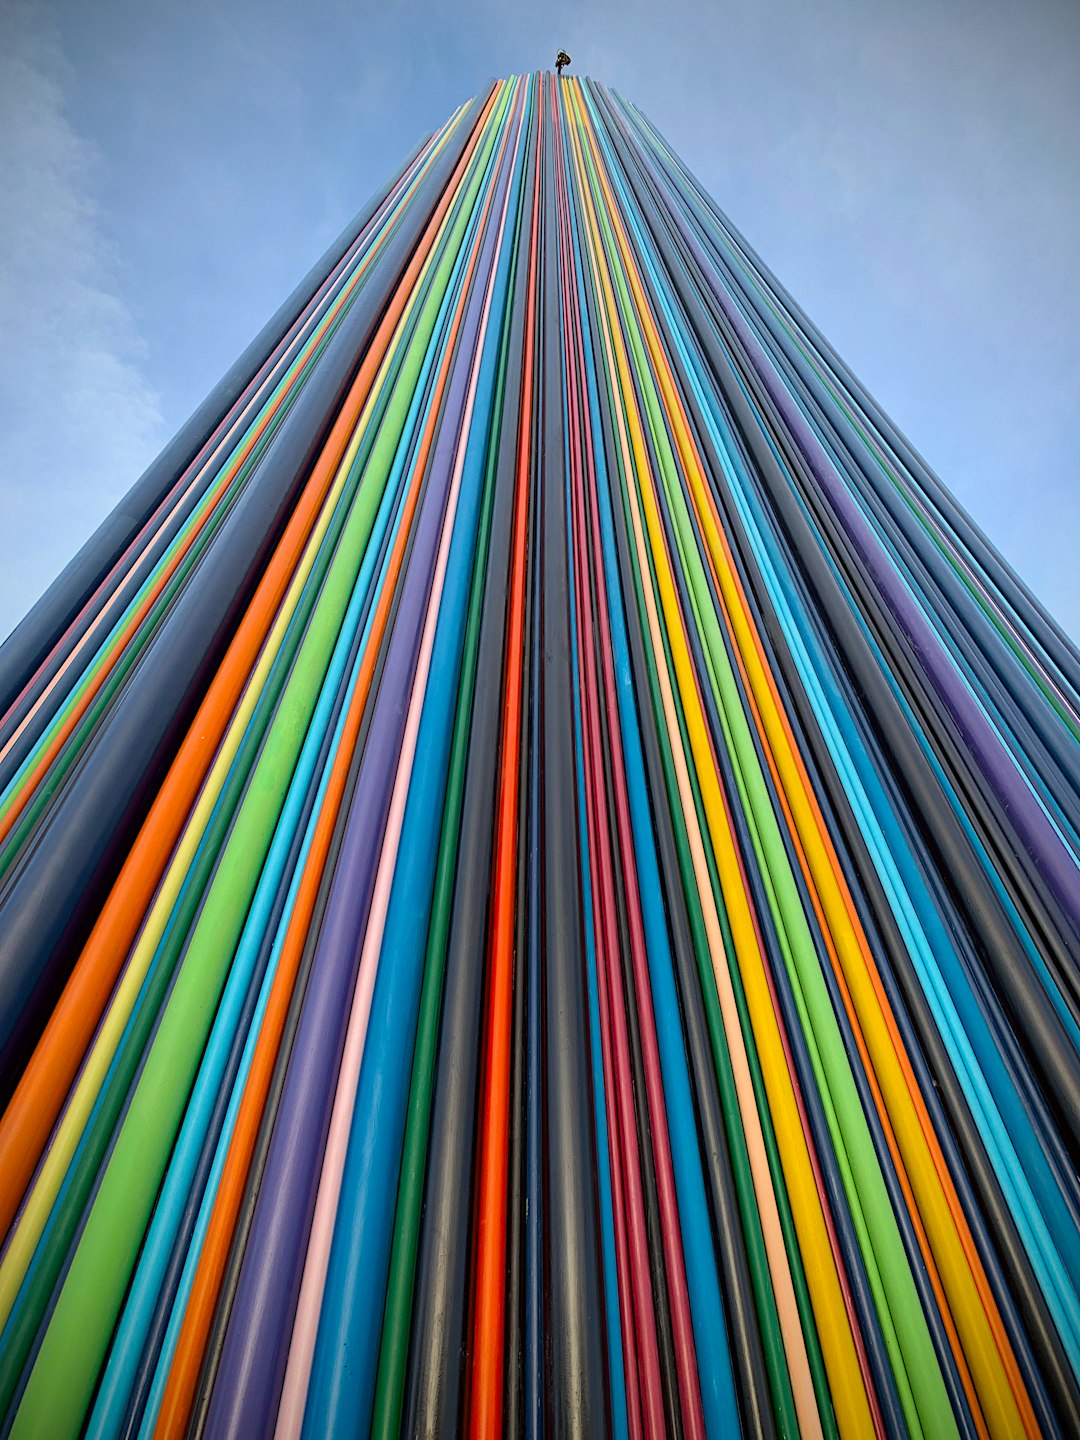 Moretti’s colourful Tower in Paris-La Défense